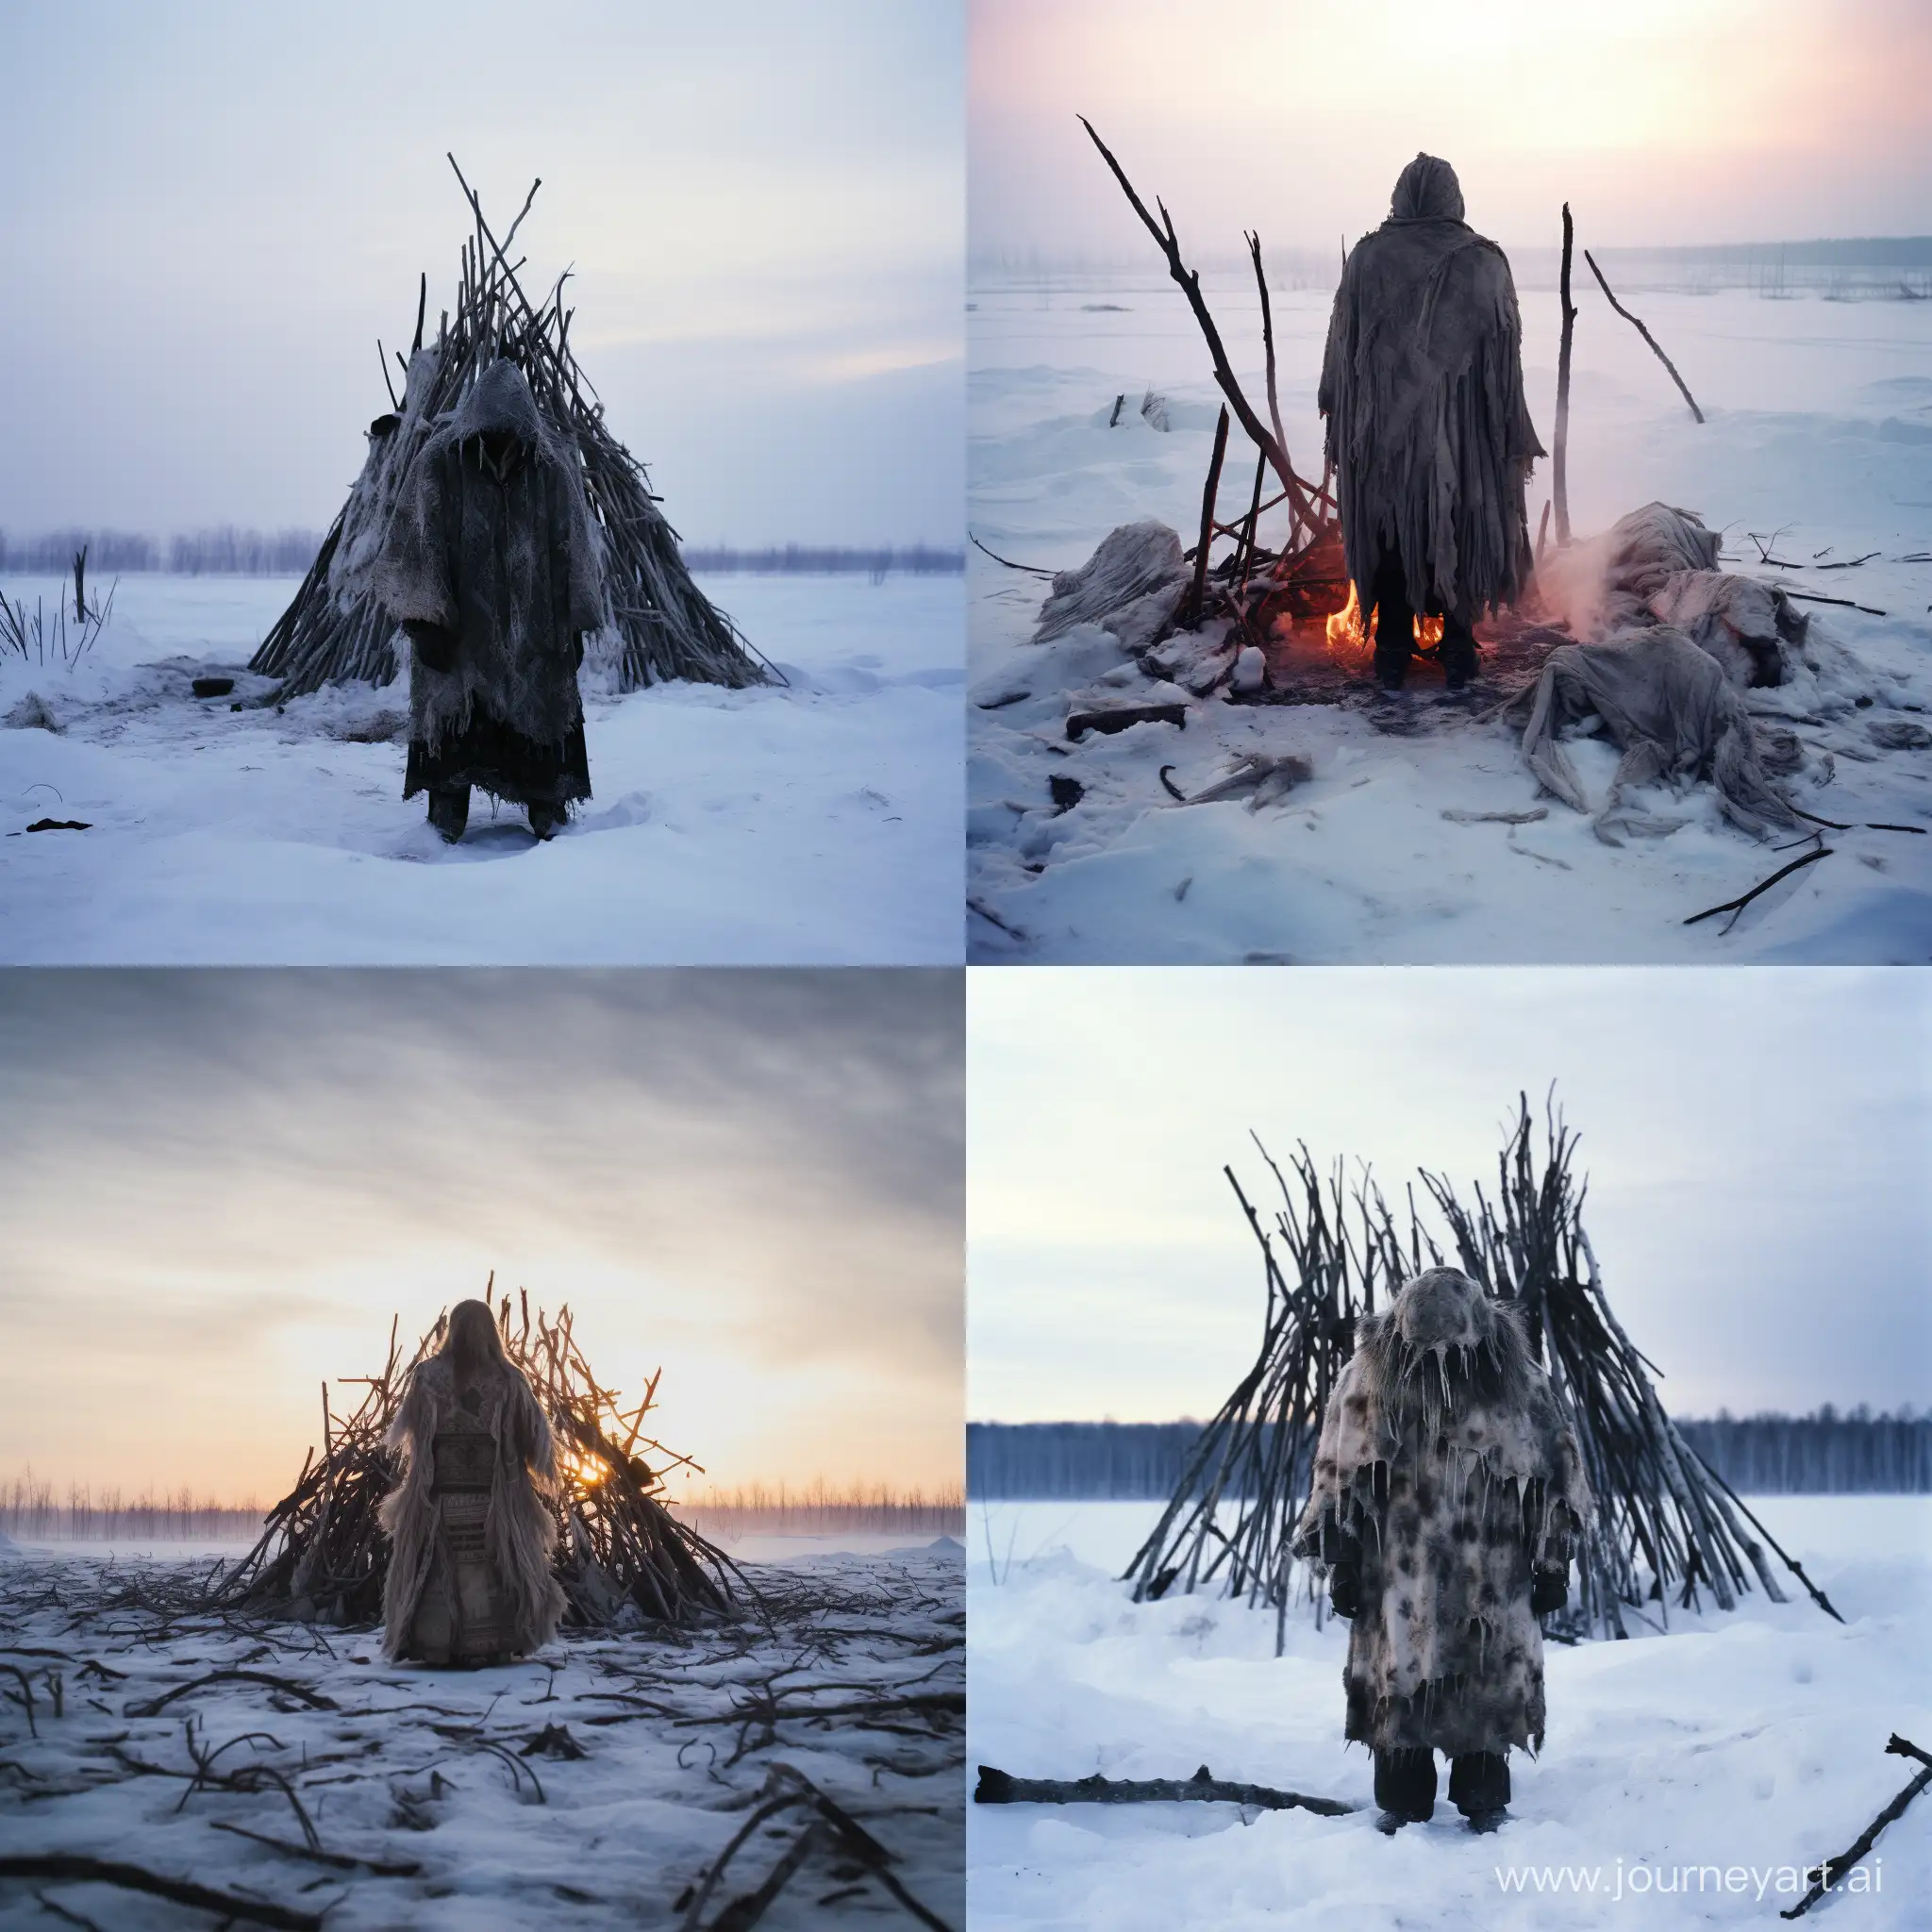 Yakutia-Shaman-Performing-Winter-Ritual-in-Hyperrealistic-8K